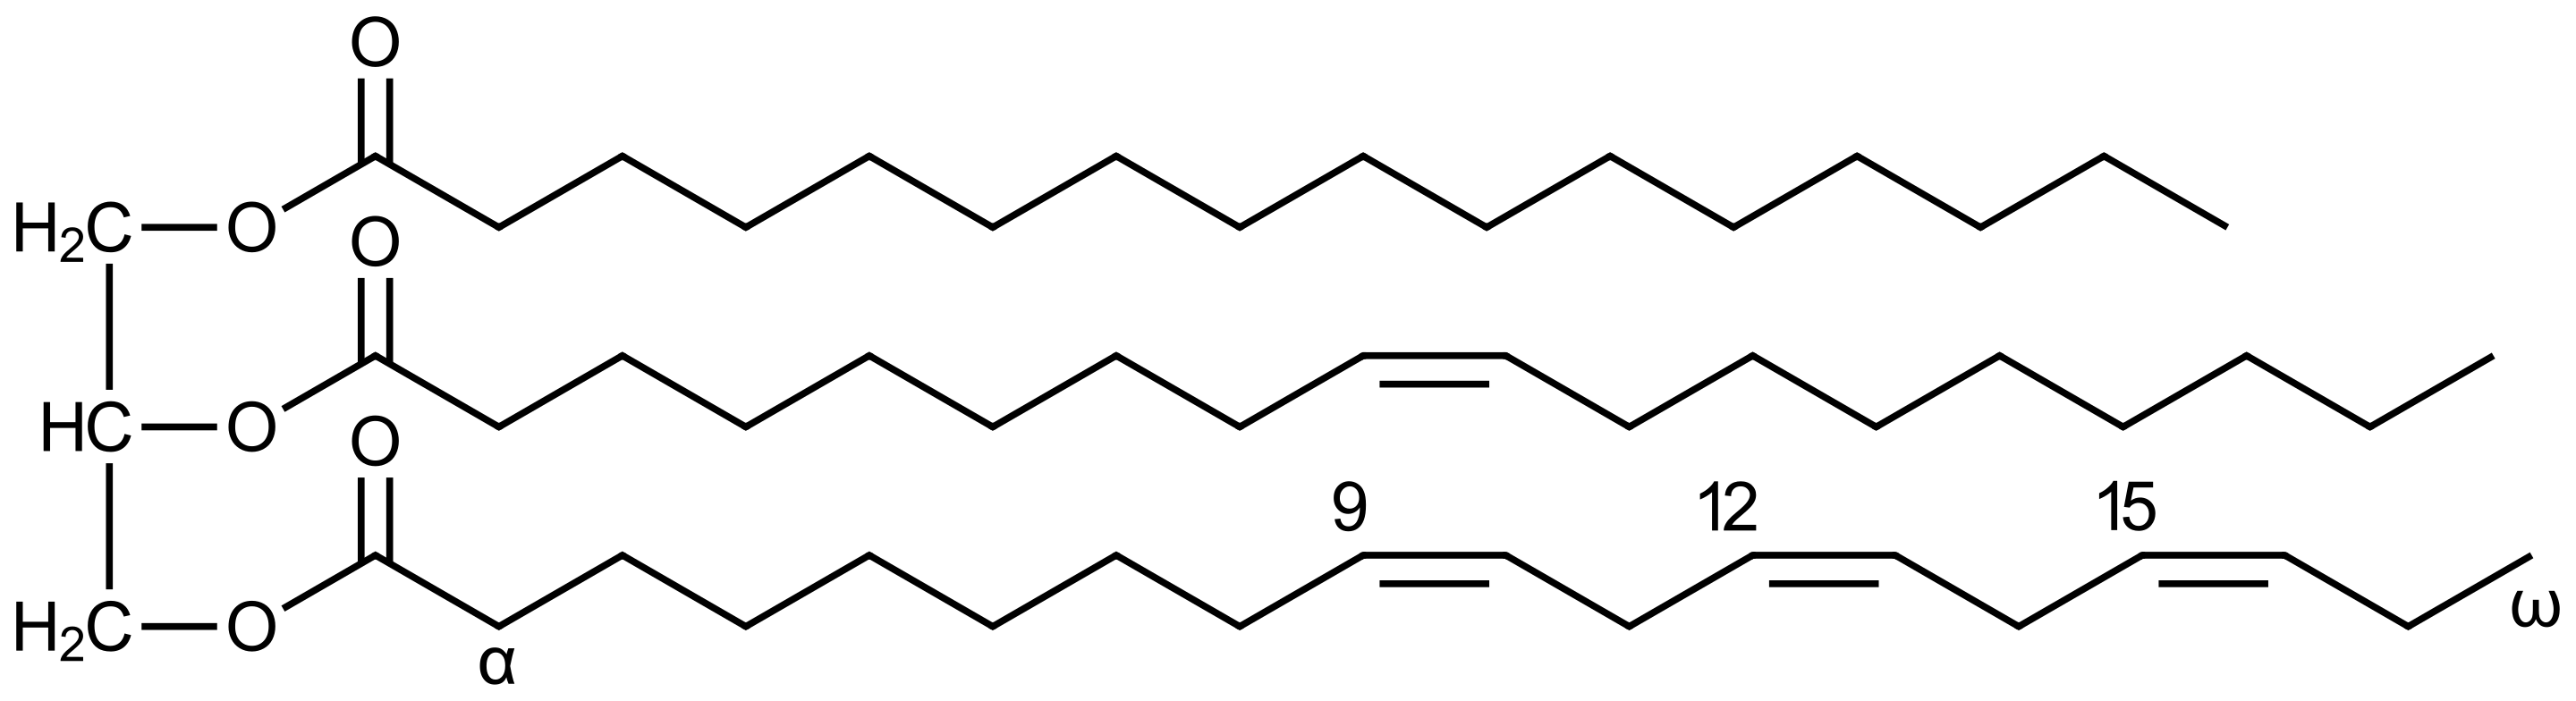 不饱和甘油三酯脂肪的例子。左侧部分：甘油, 右侧部分从上到下：棕榈酸，油酸，α-亚麻酸。化学式: C55H98O6